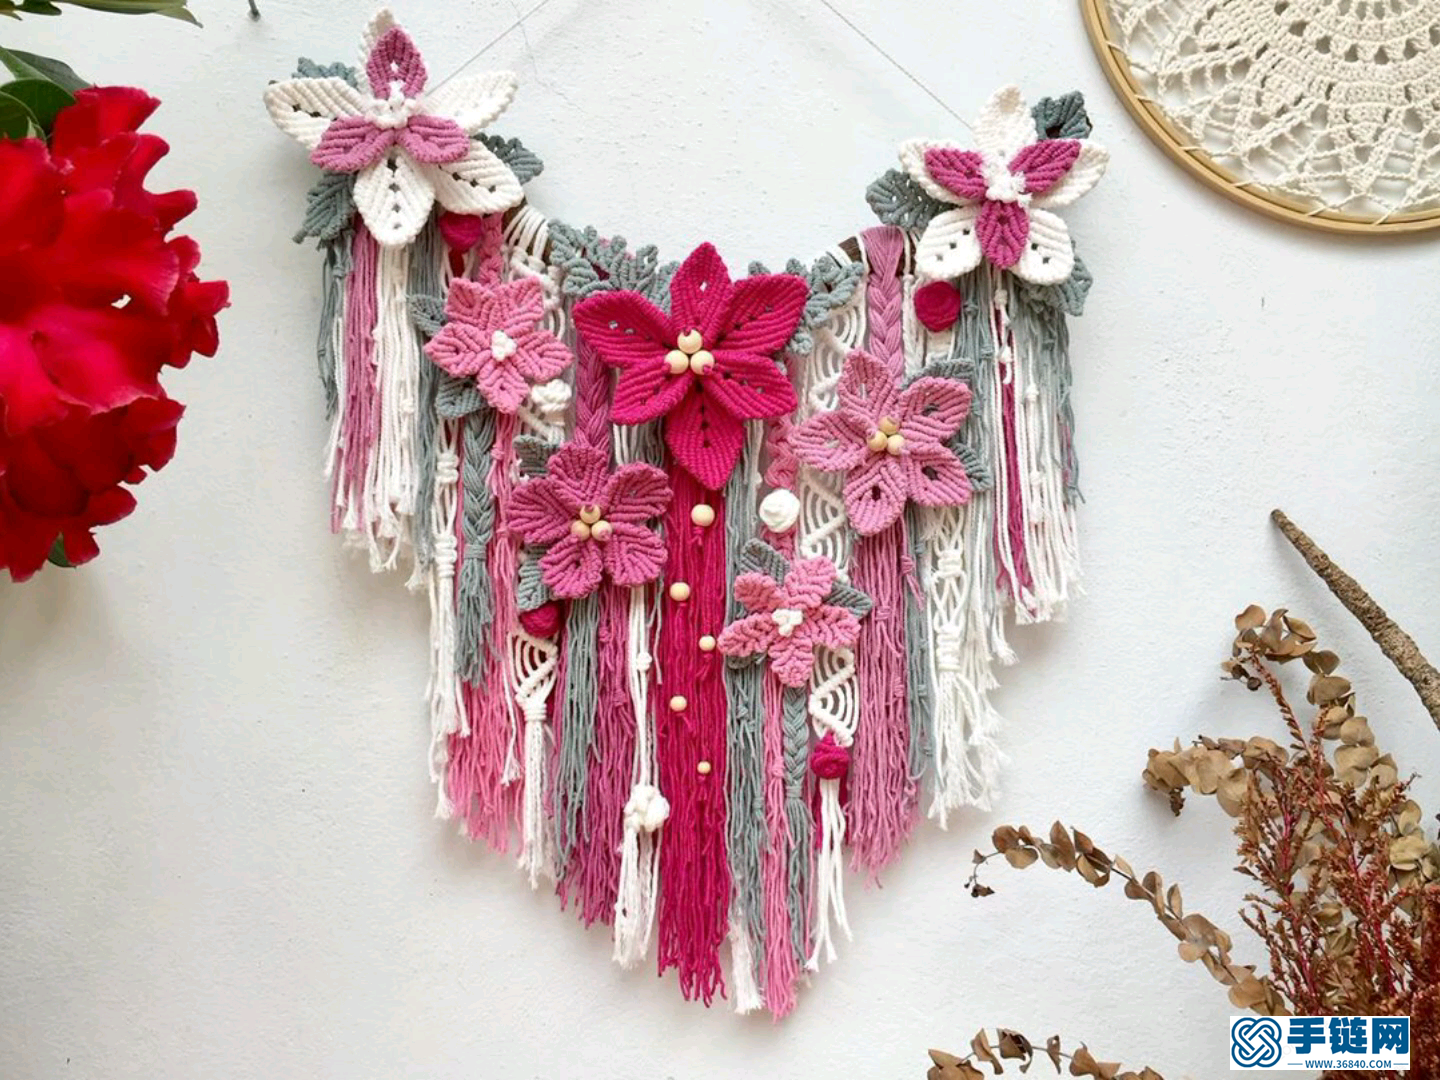 Macrame编织花朵装饰挂毯，让绚丽多彩的春天永远定格在墙面上